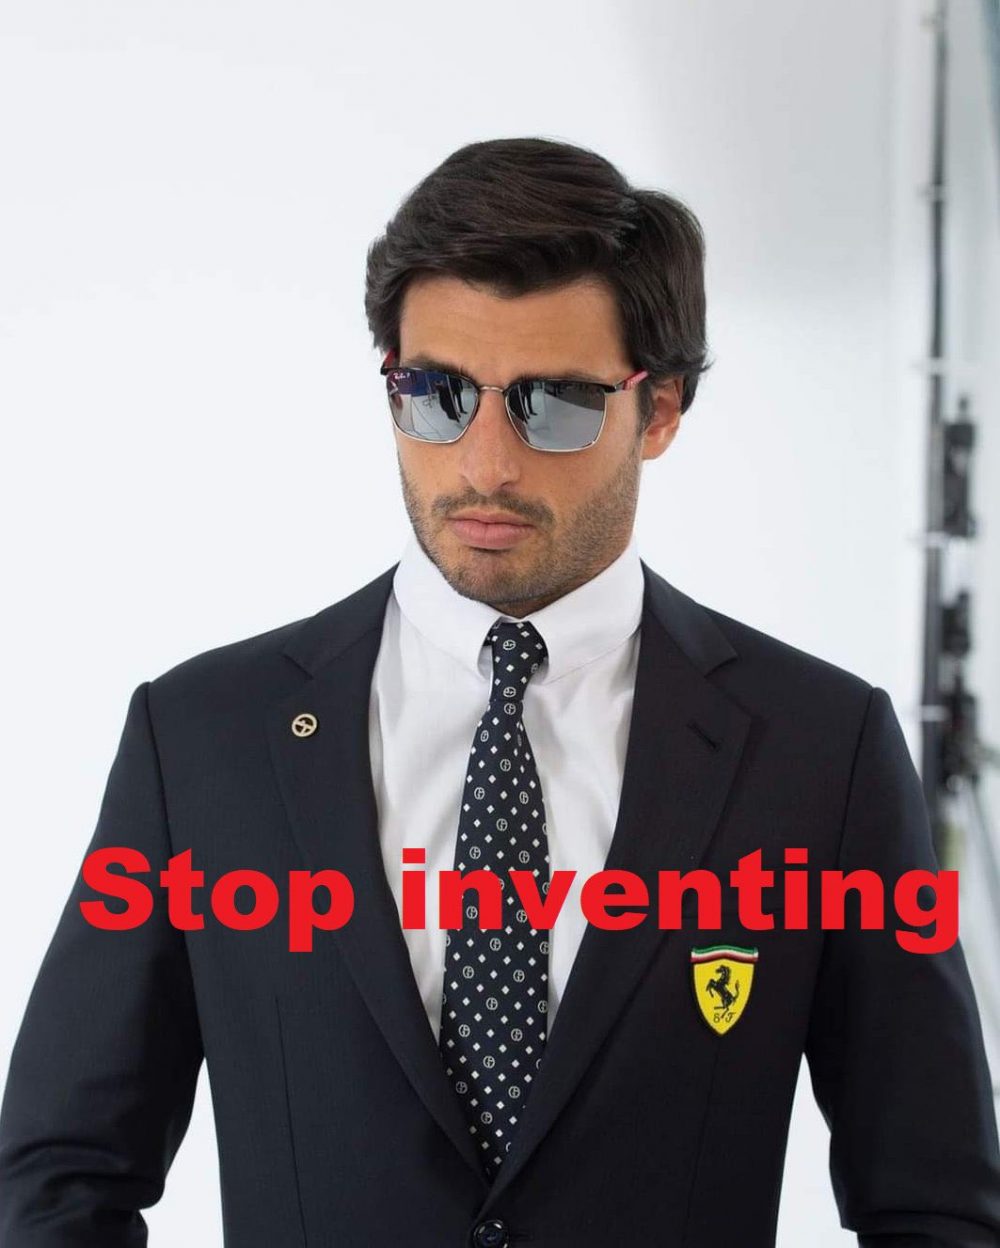 El "STOP INVENTING" de Carlos Sainz a Ferrari fue trending topic ayer